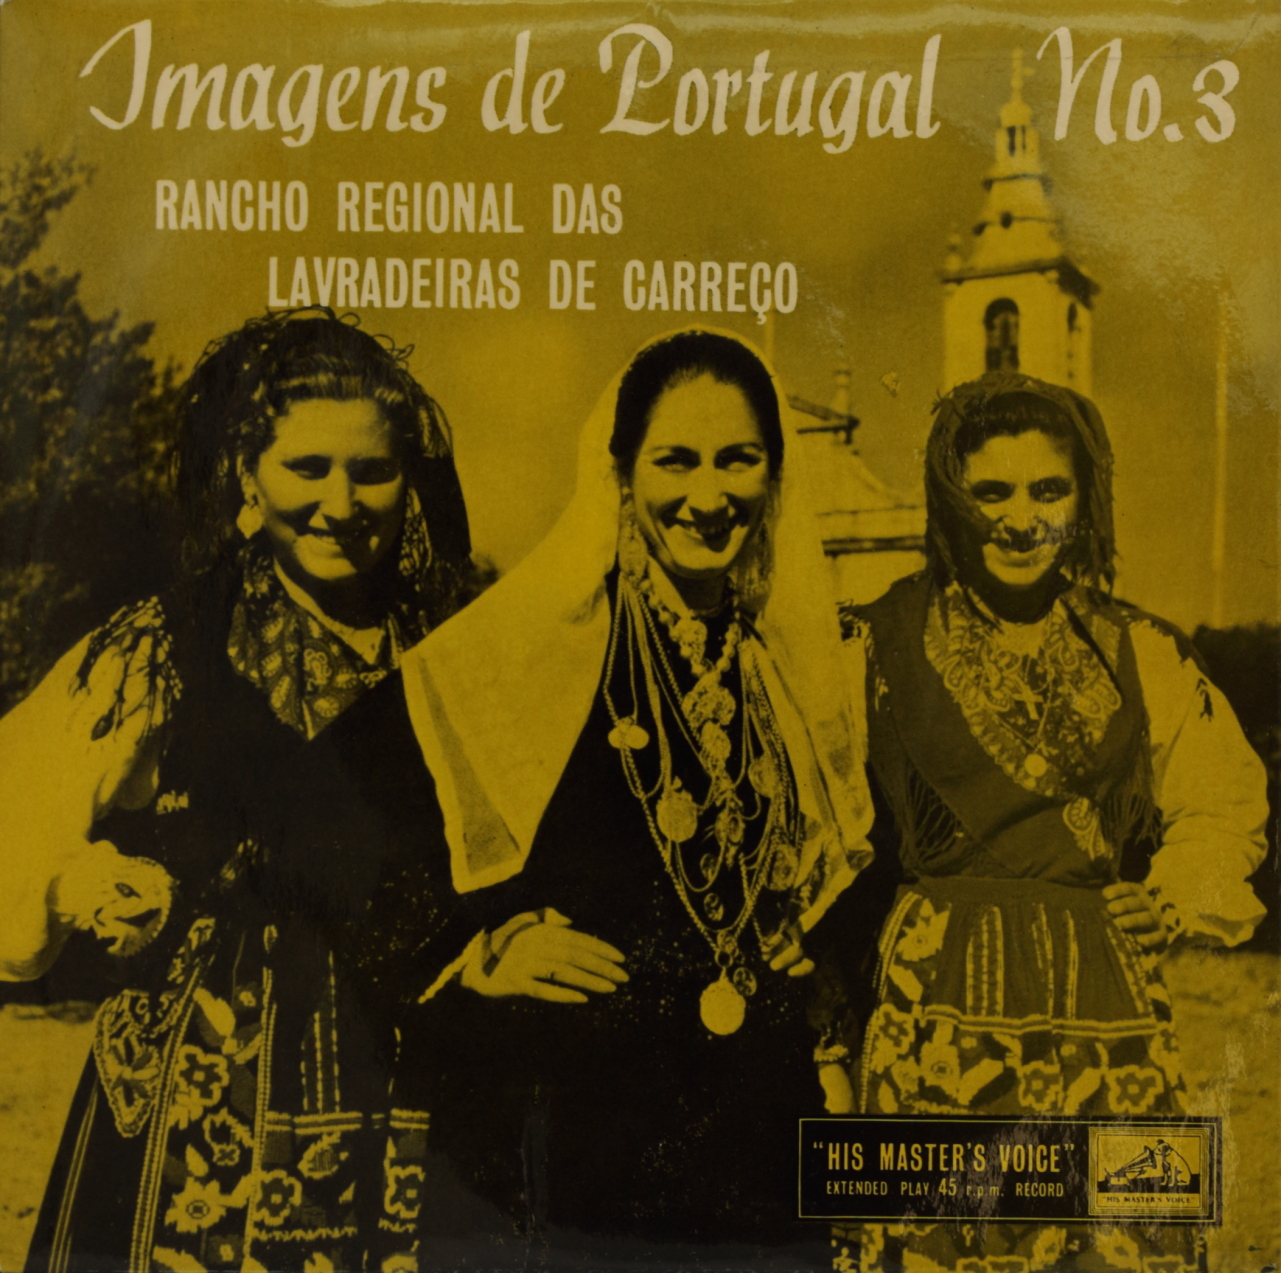 Imagens de Portugal No. 3